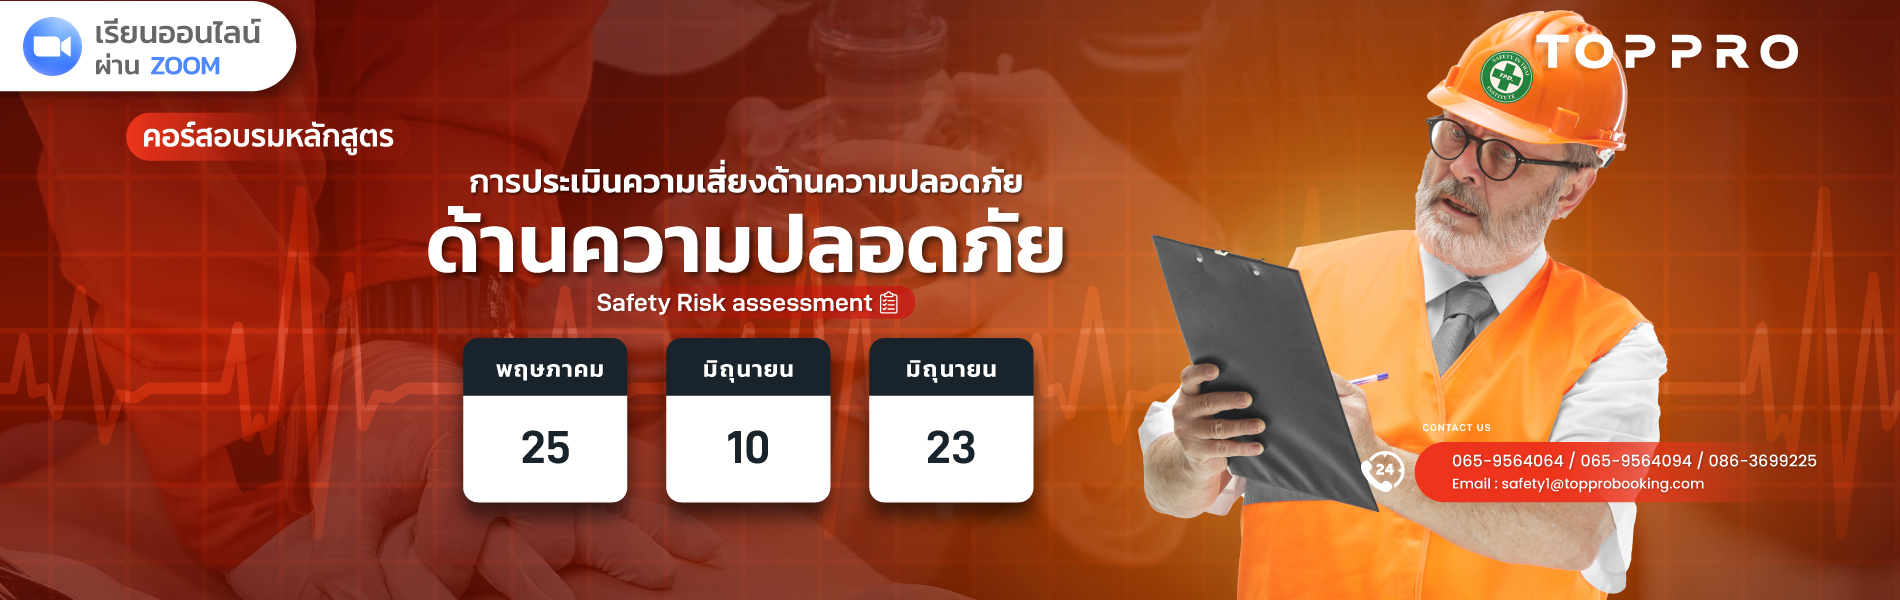 การประเมินความเสี่ยงด้านความปลอดภัย (Safety Risk assessment)